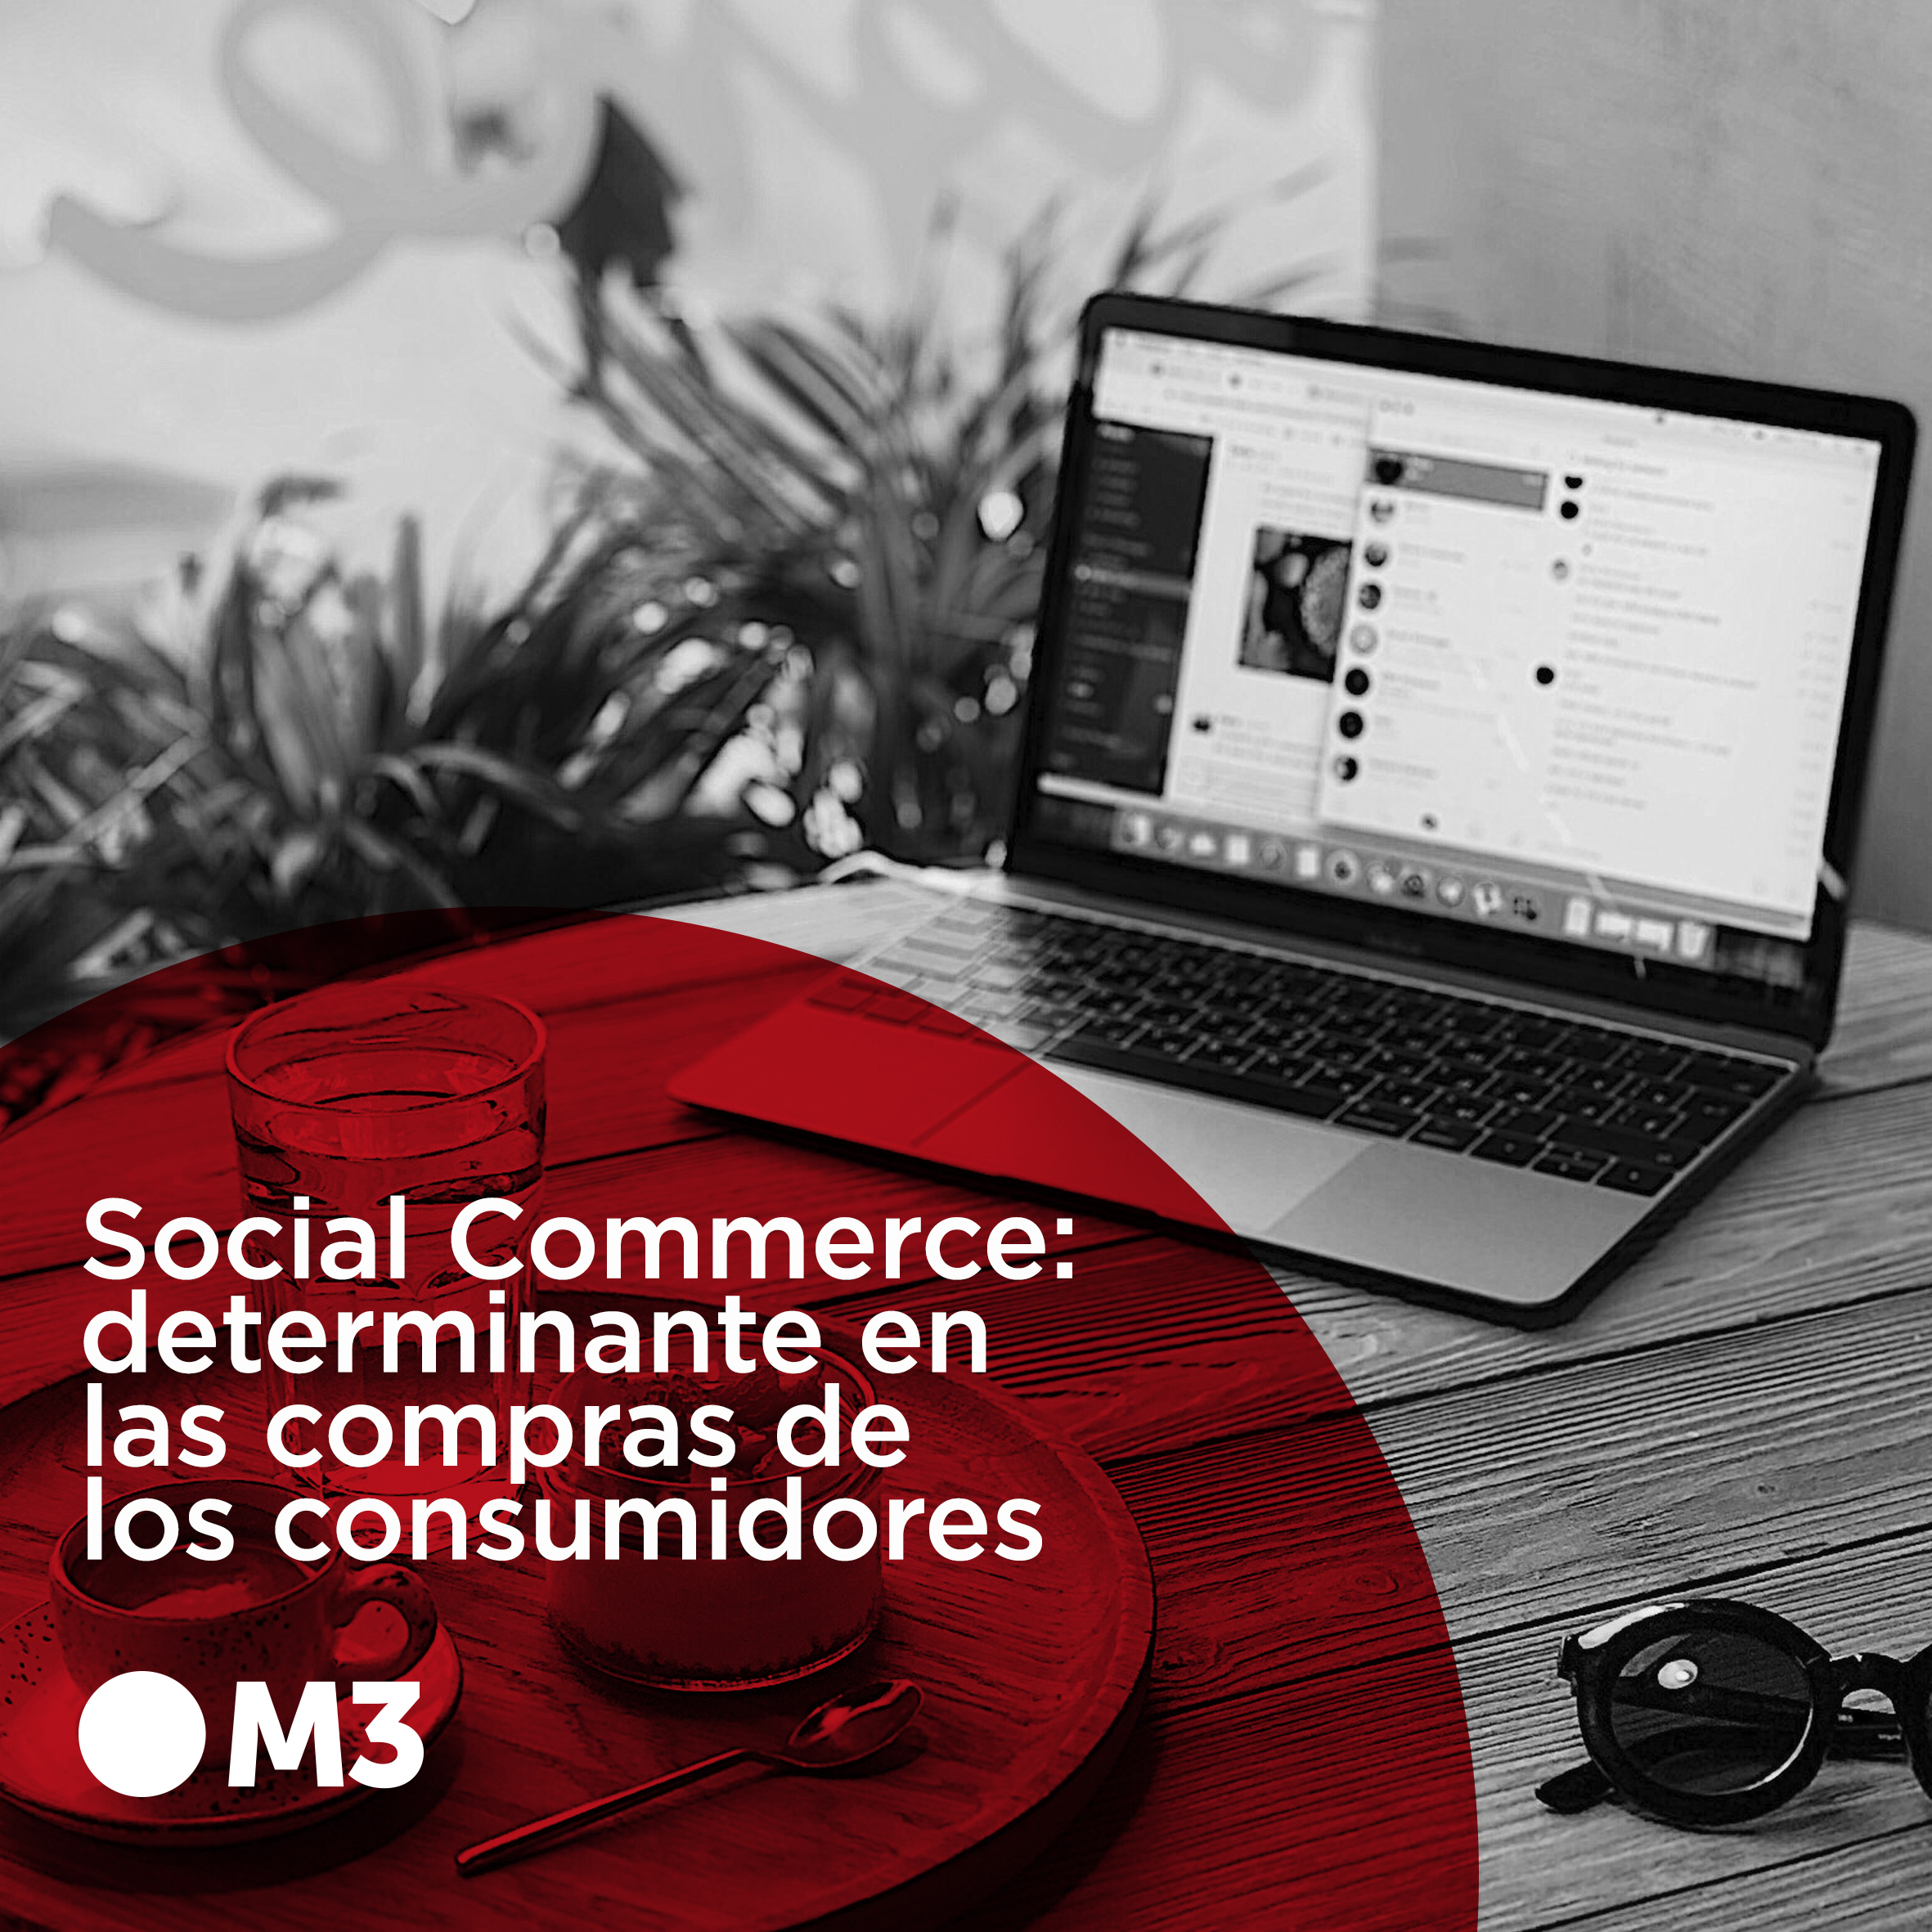 Social Commerce: determinante en las compras de los consumidores